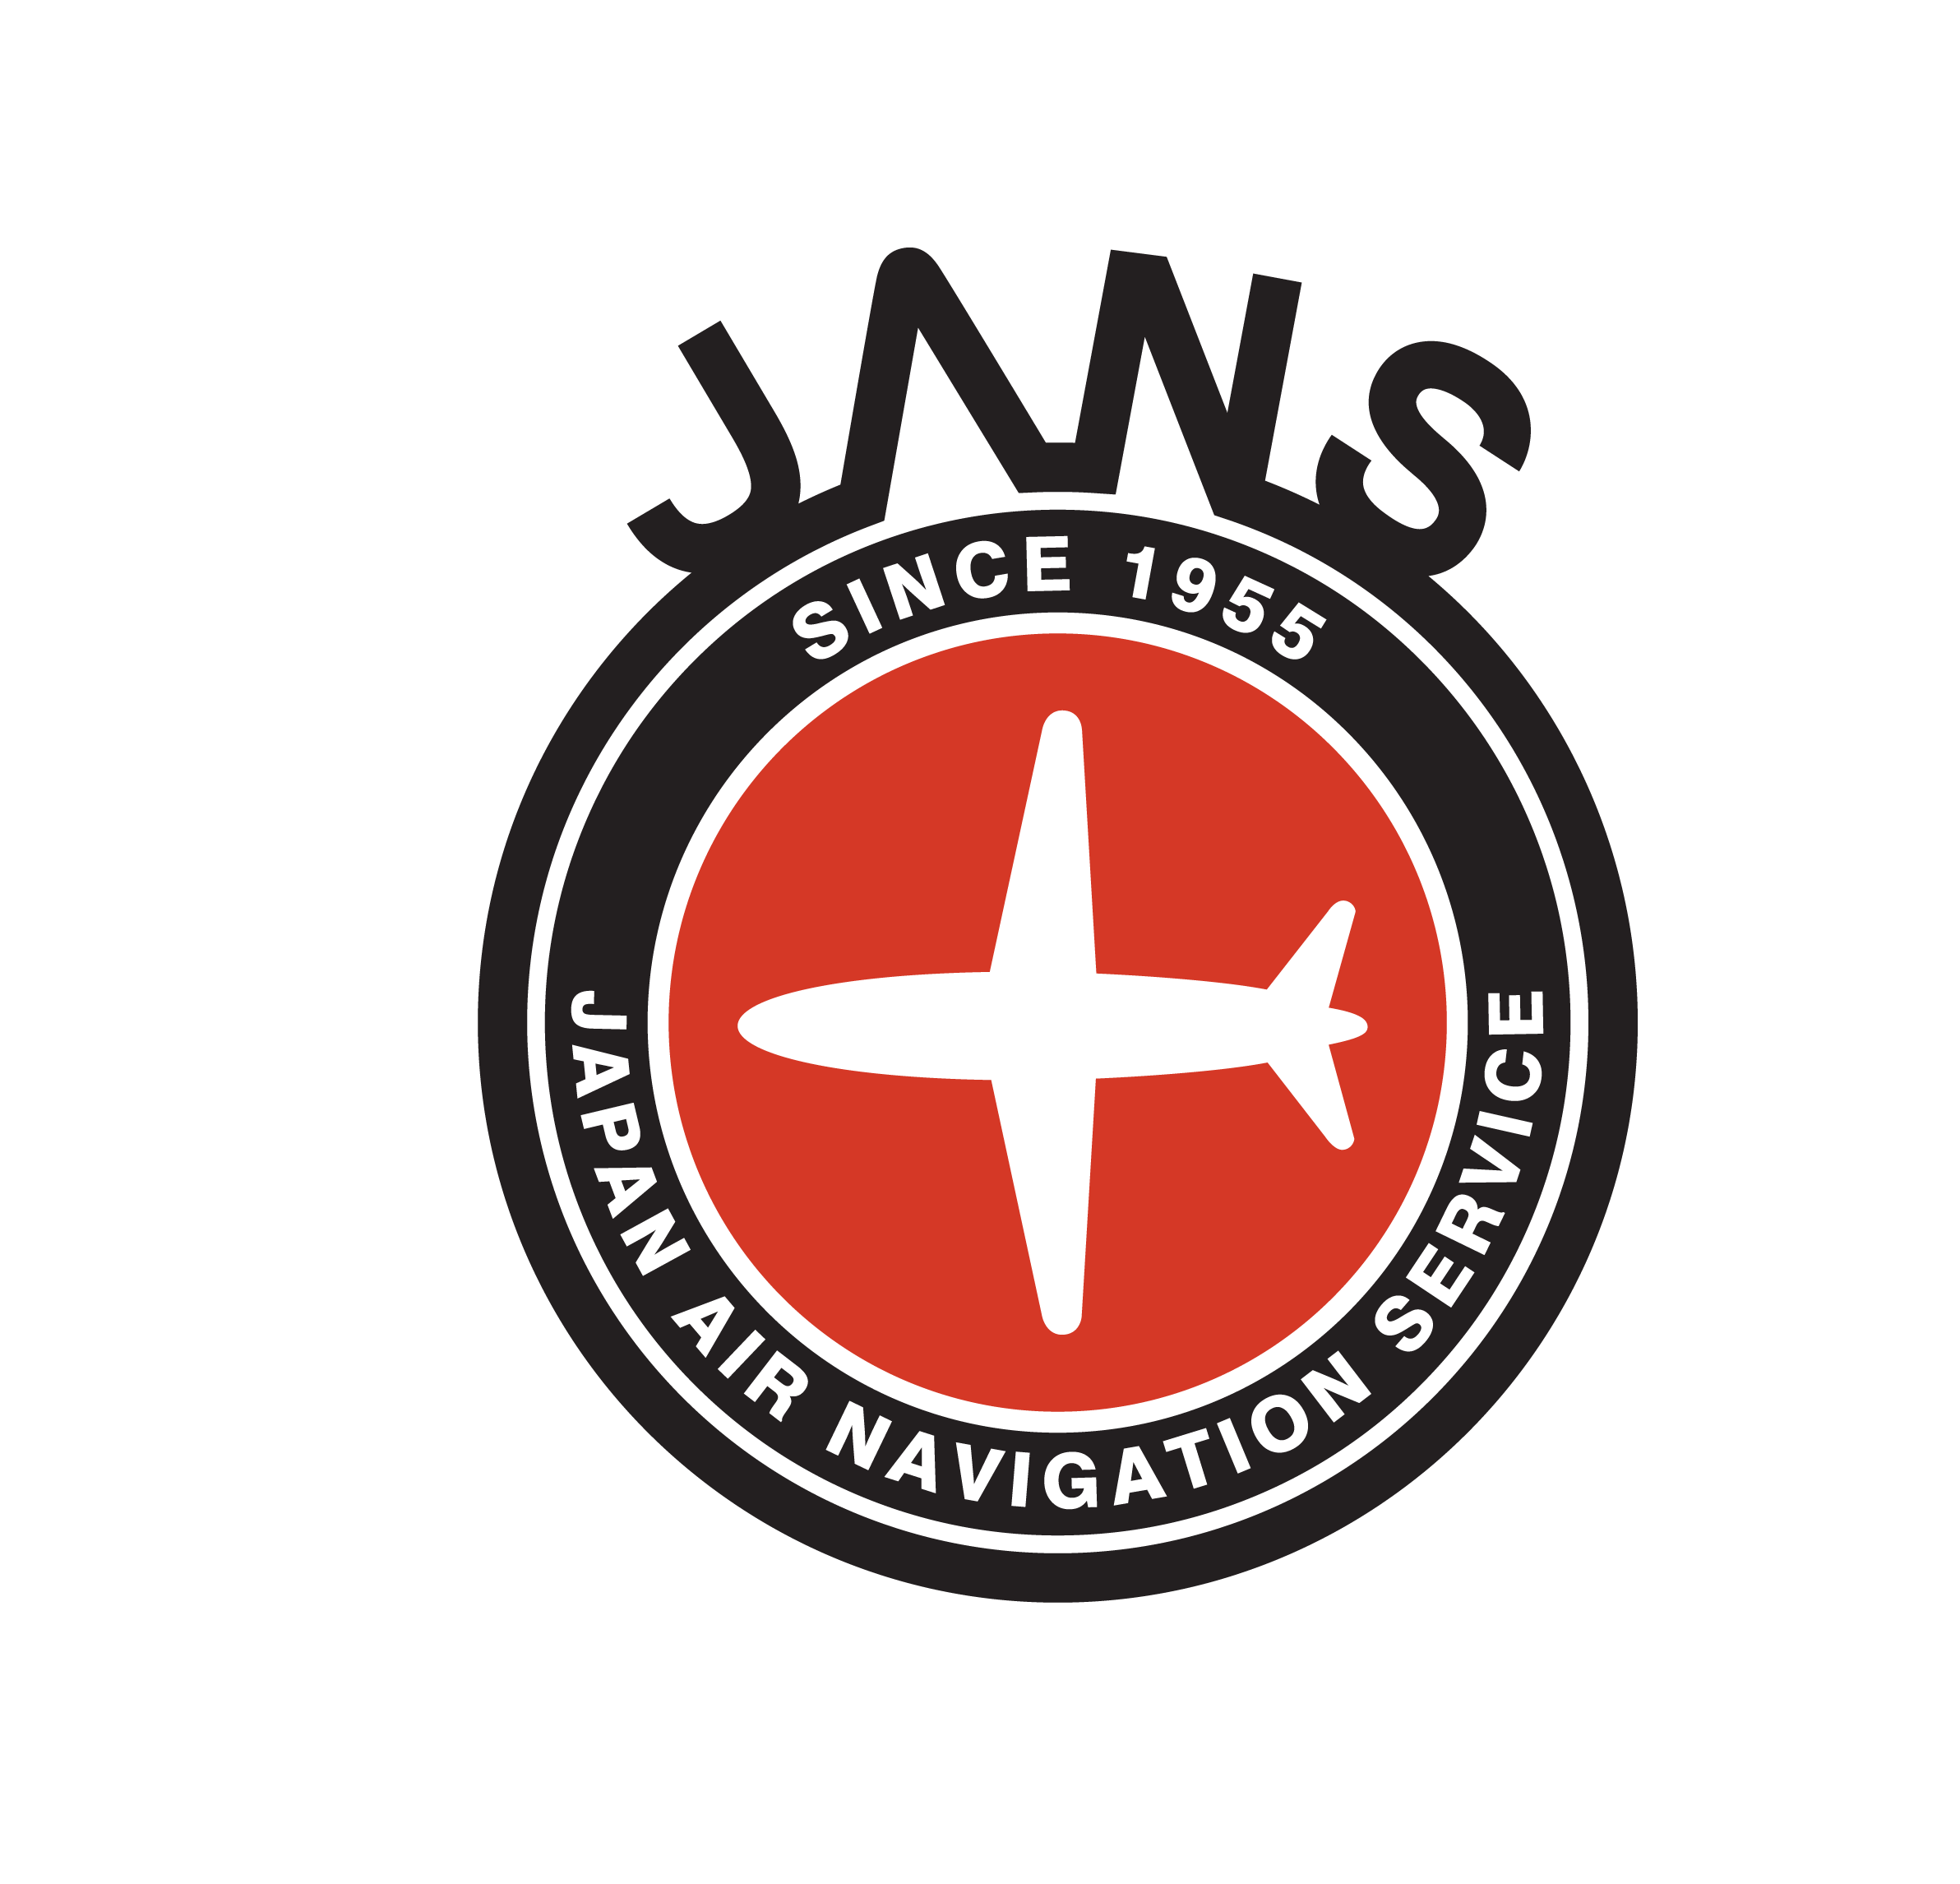 Japan Air Logo - Japan Air Navigation Service (JANS)